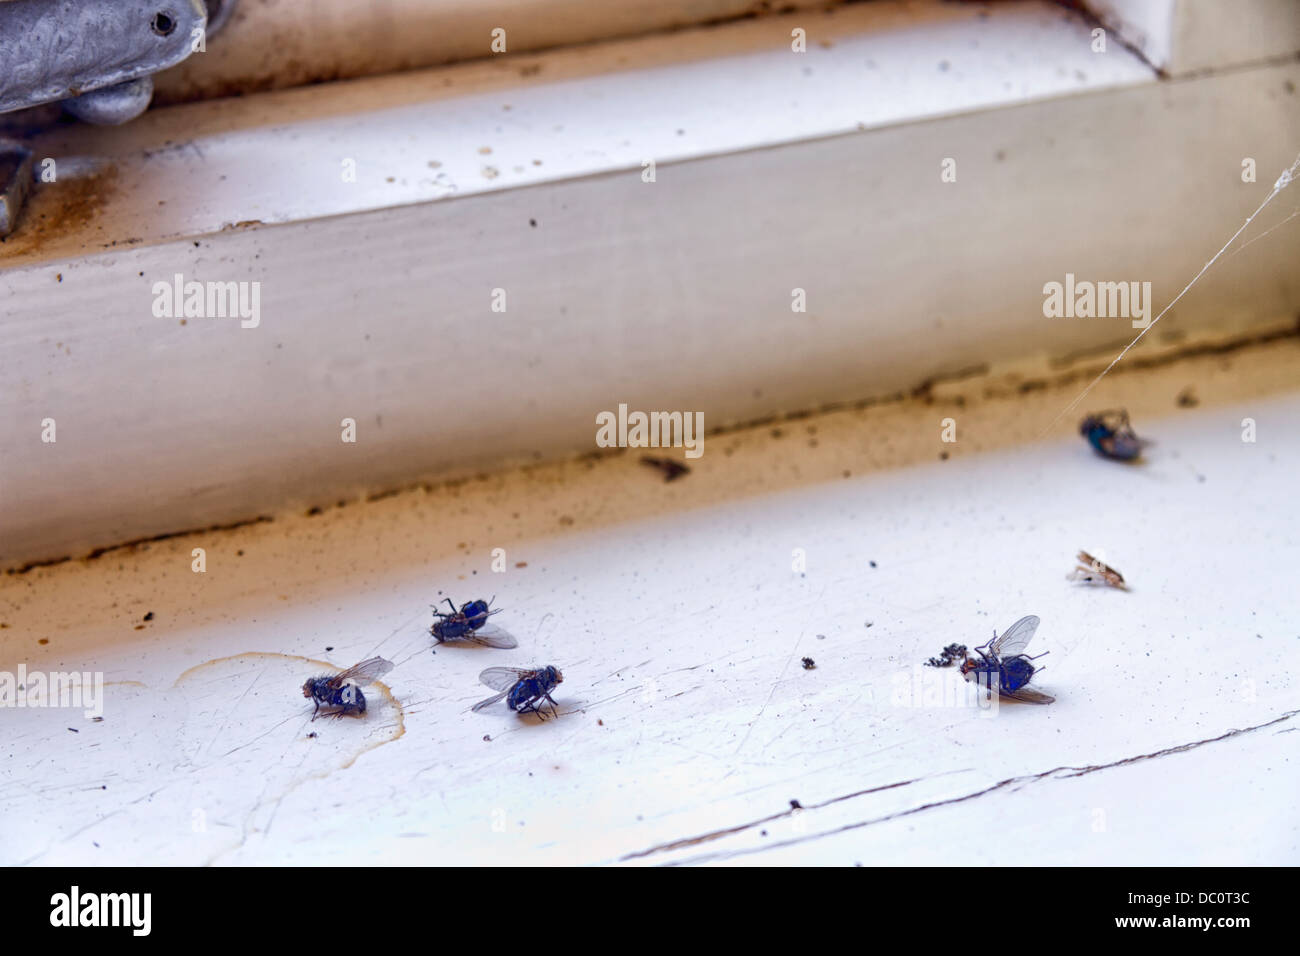 Tote Fliegen auf einer Fensterbank Stockfotografie - Alamy